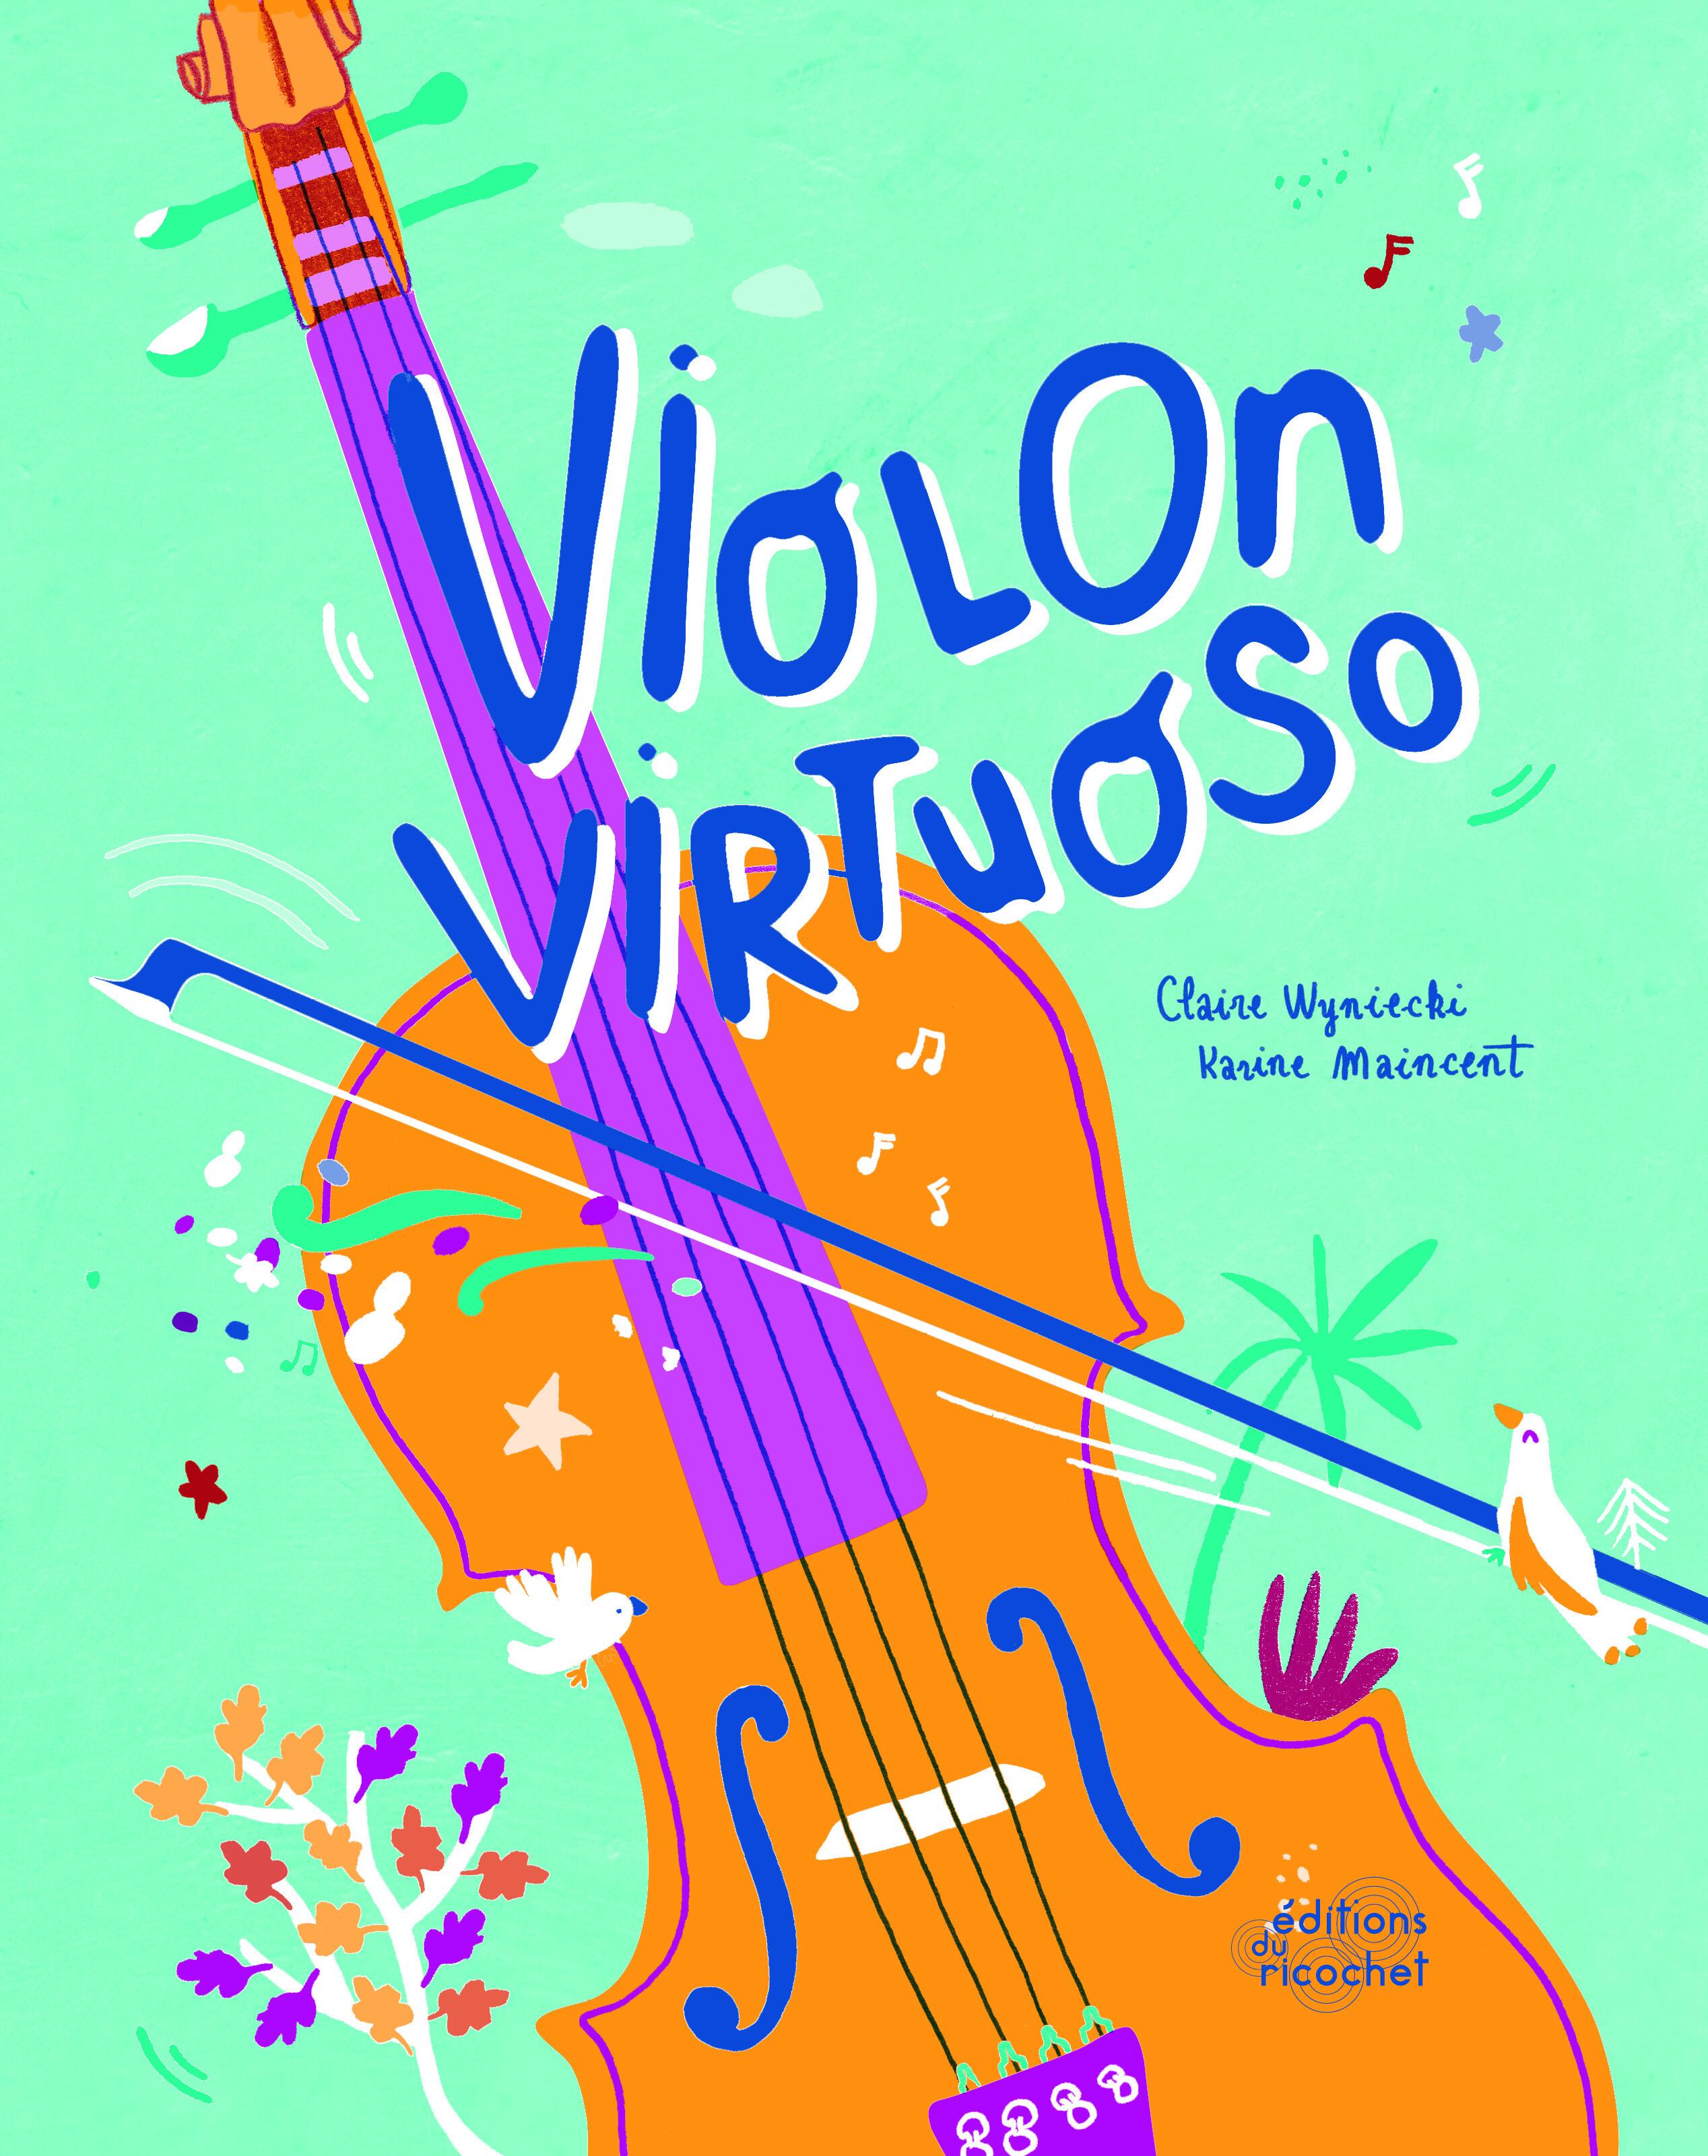 Virtuoso Violon